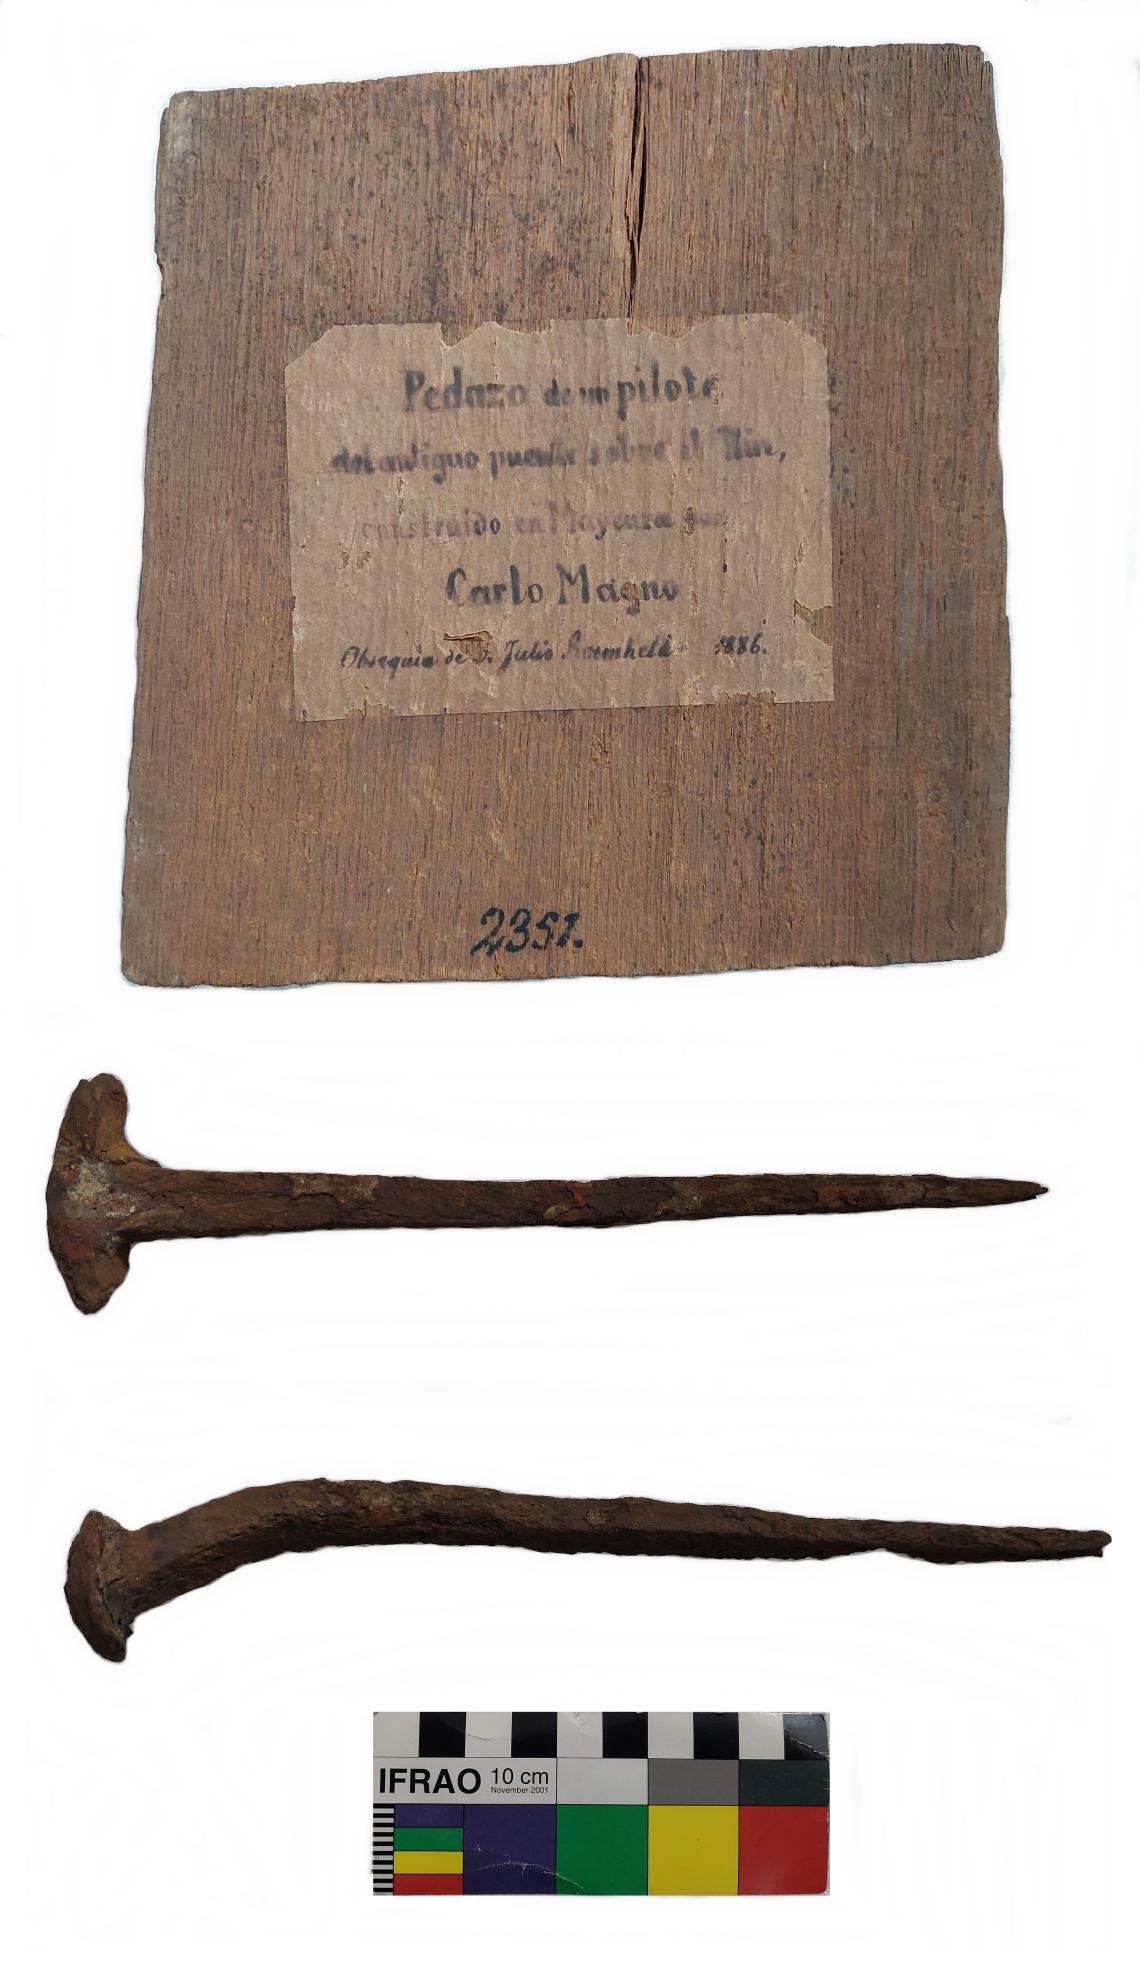 Figura 3: Fragmento de pilote y clavos que habrían pertenecido al puente de Carlomagno sobre el Rin. Colección MNHN, donados por Julio Roemheld en 1886.